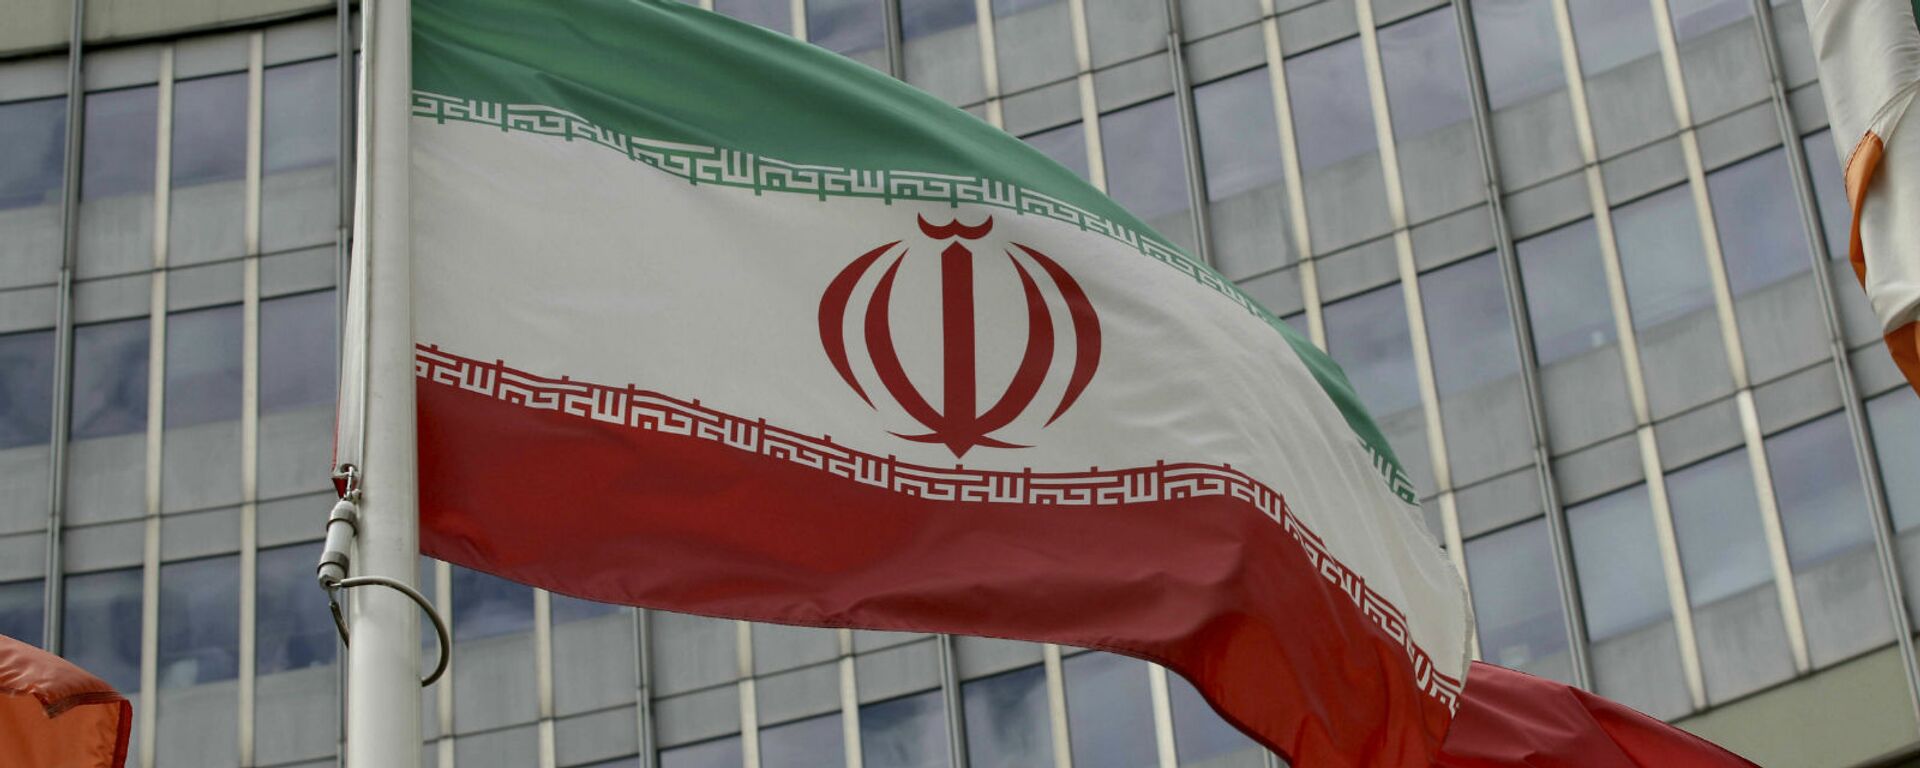 Иранский флаг развевается у здания ООН, в котором находится офис Международного агентства по атомной энергии МАГАТЭ (10 июля 2019). Вена - Sputnik Армения, 1920, 31.05.2021